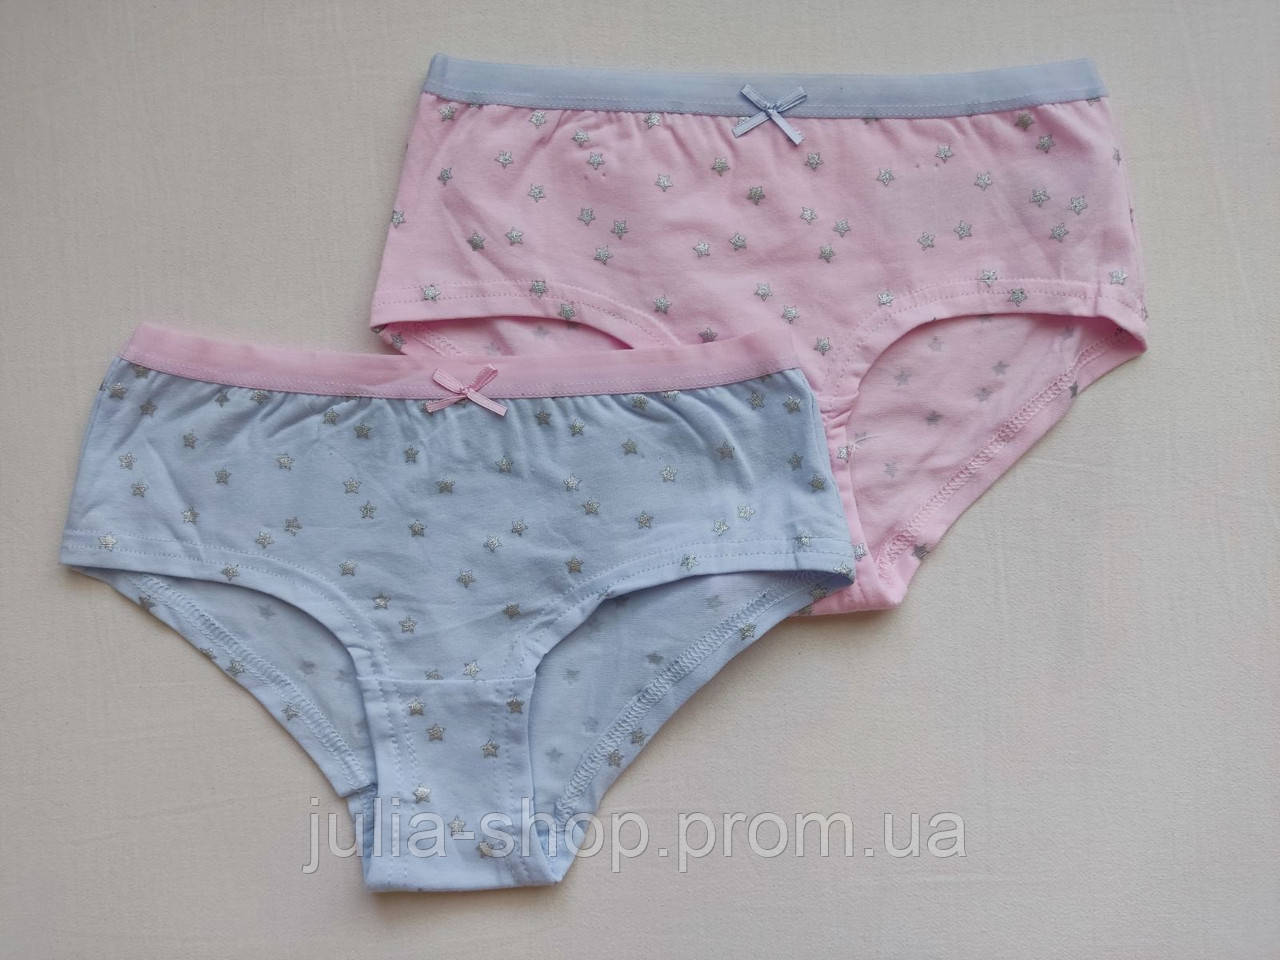 Pepco Комплекти трусів шортів в зірочки для дівчинки розміри 98-128